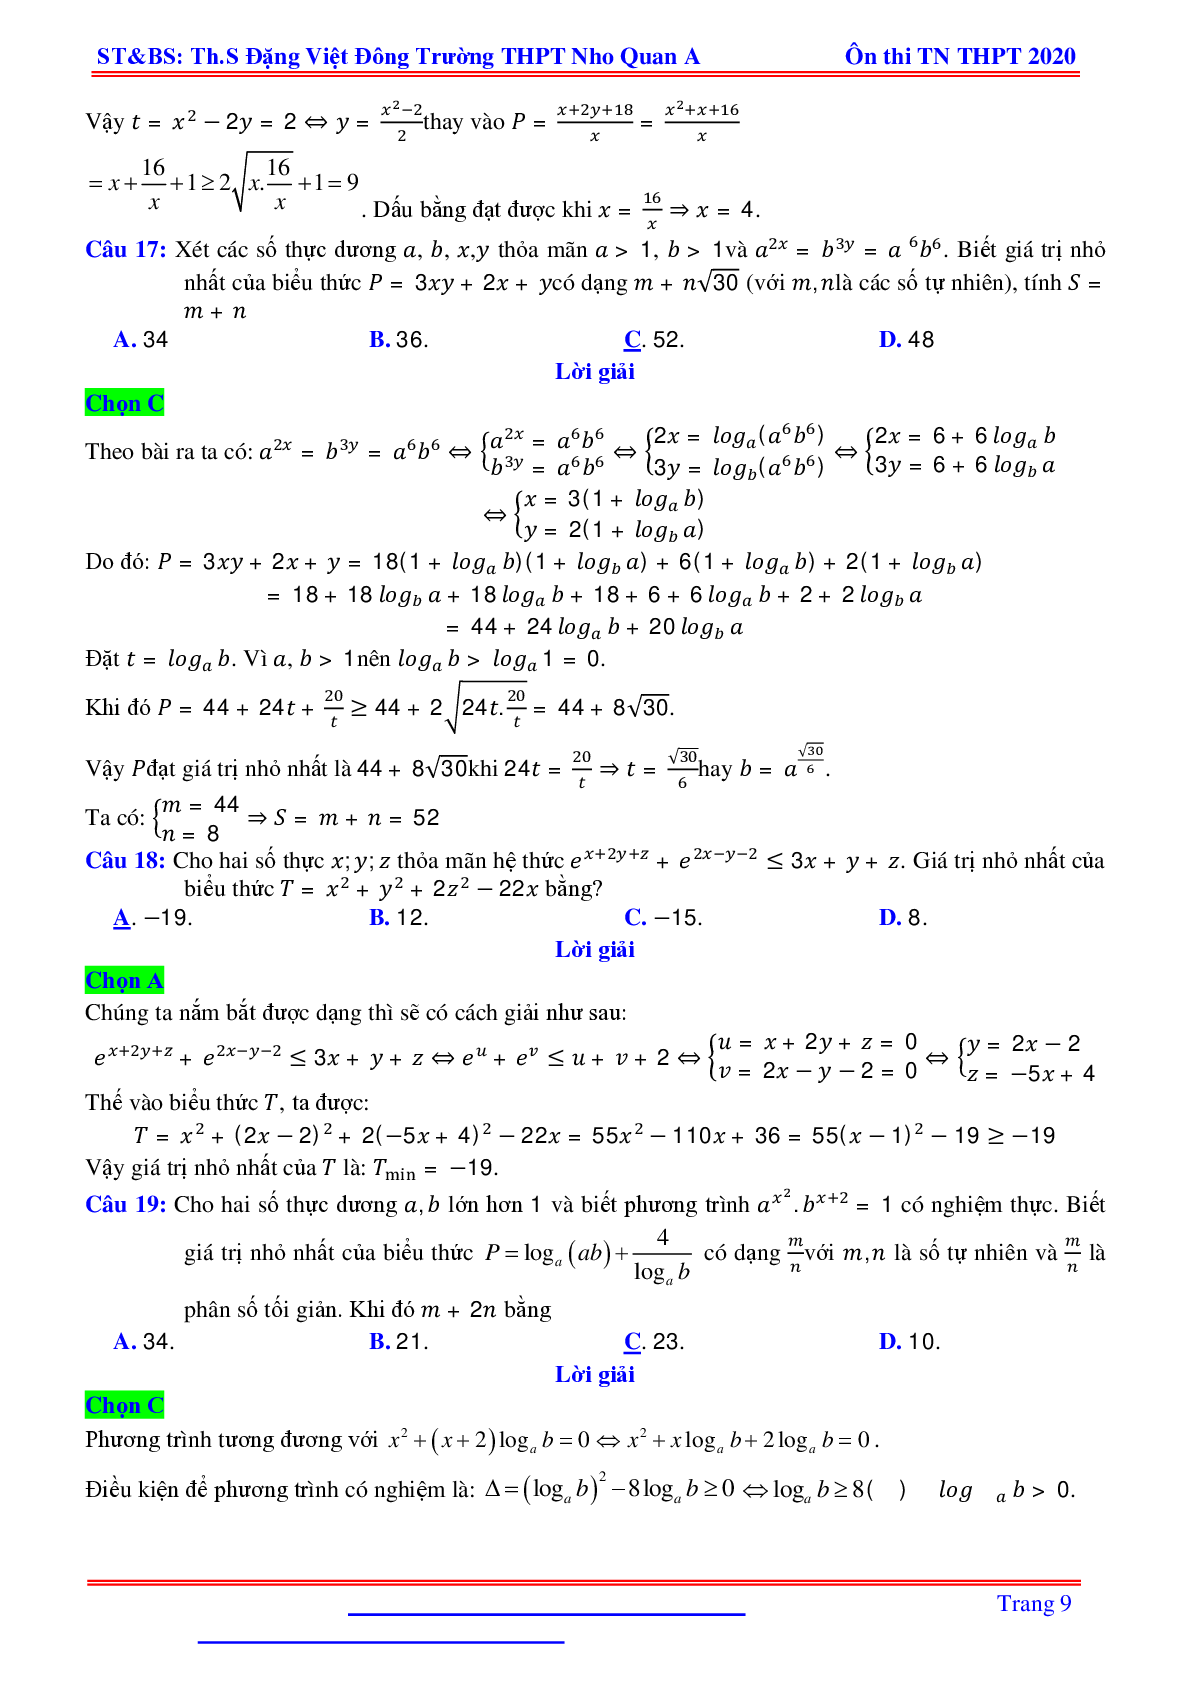 Bài toán min-max liên quan hàm số mũ, logarit nhiều biến - Đặng Việt Đông (trang 9)